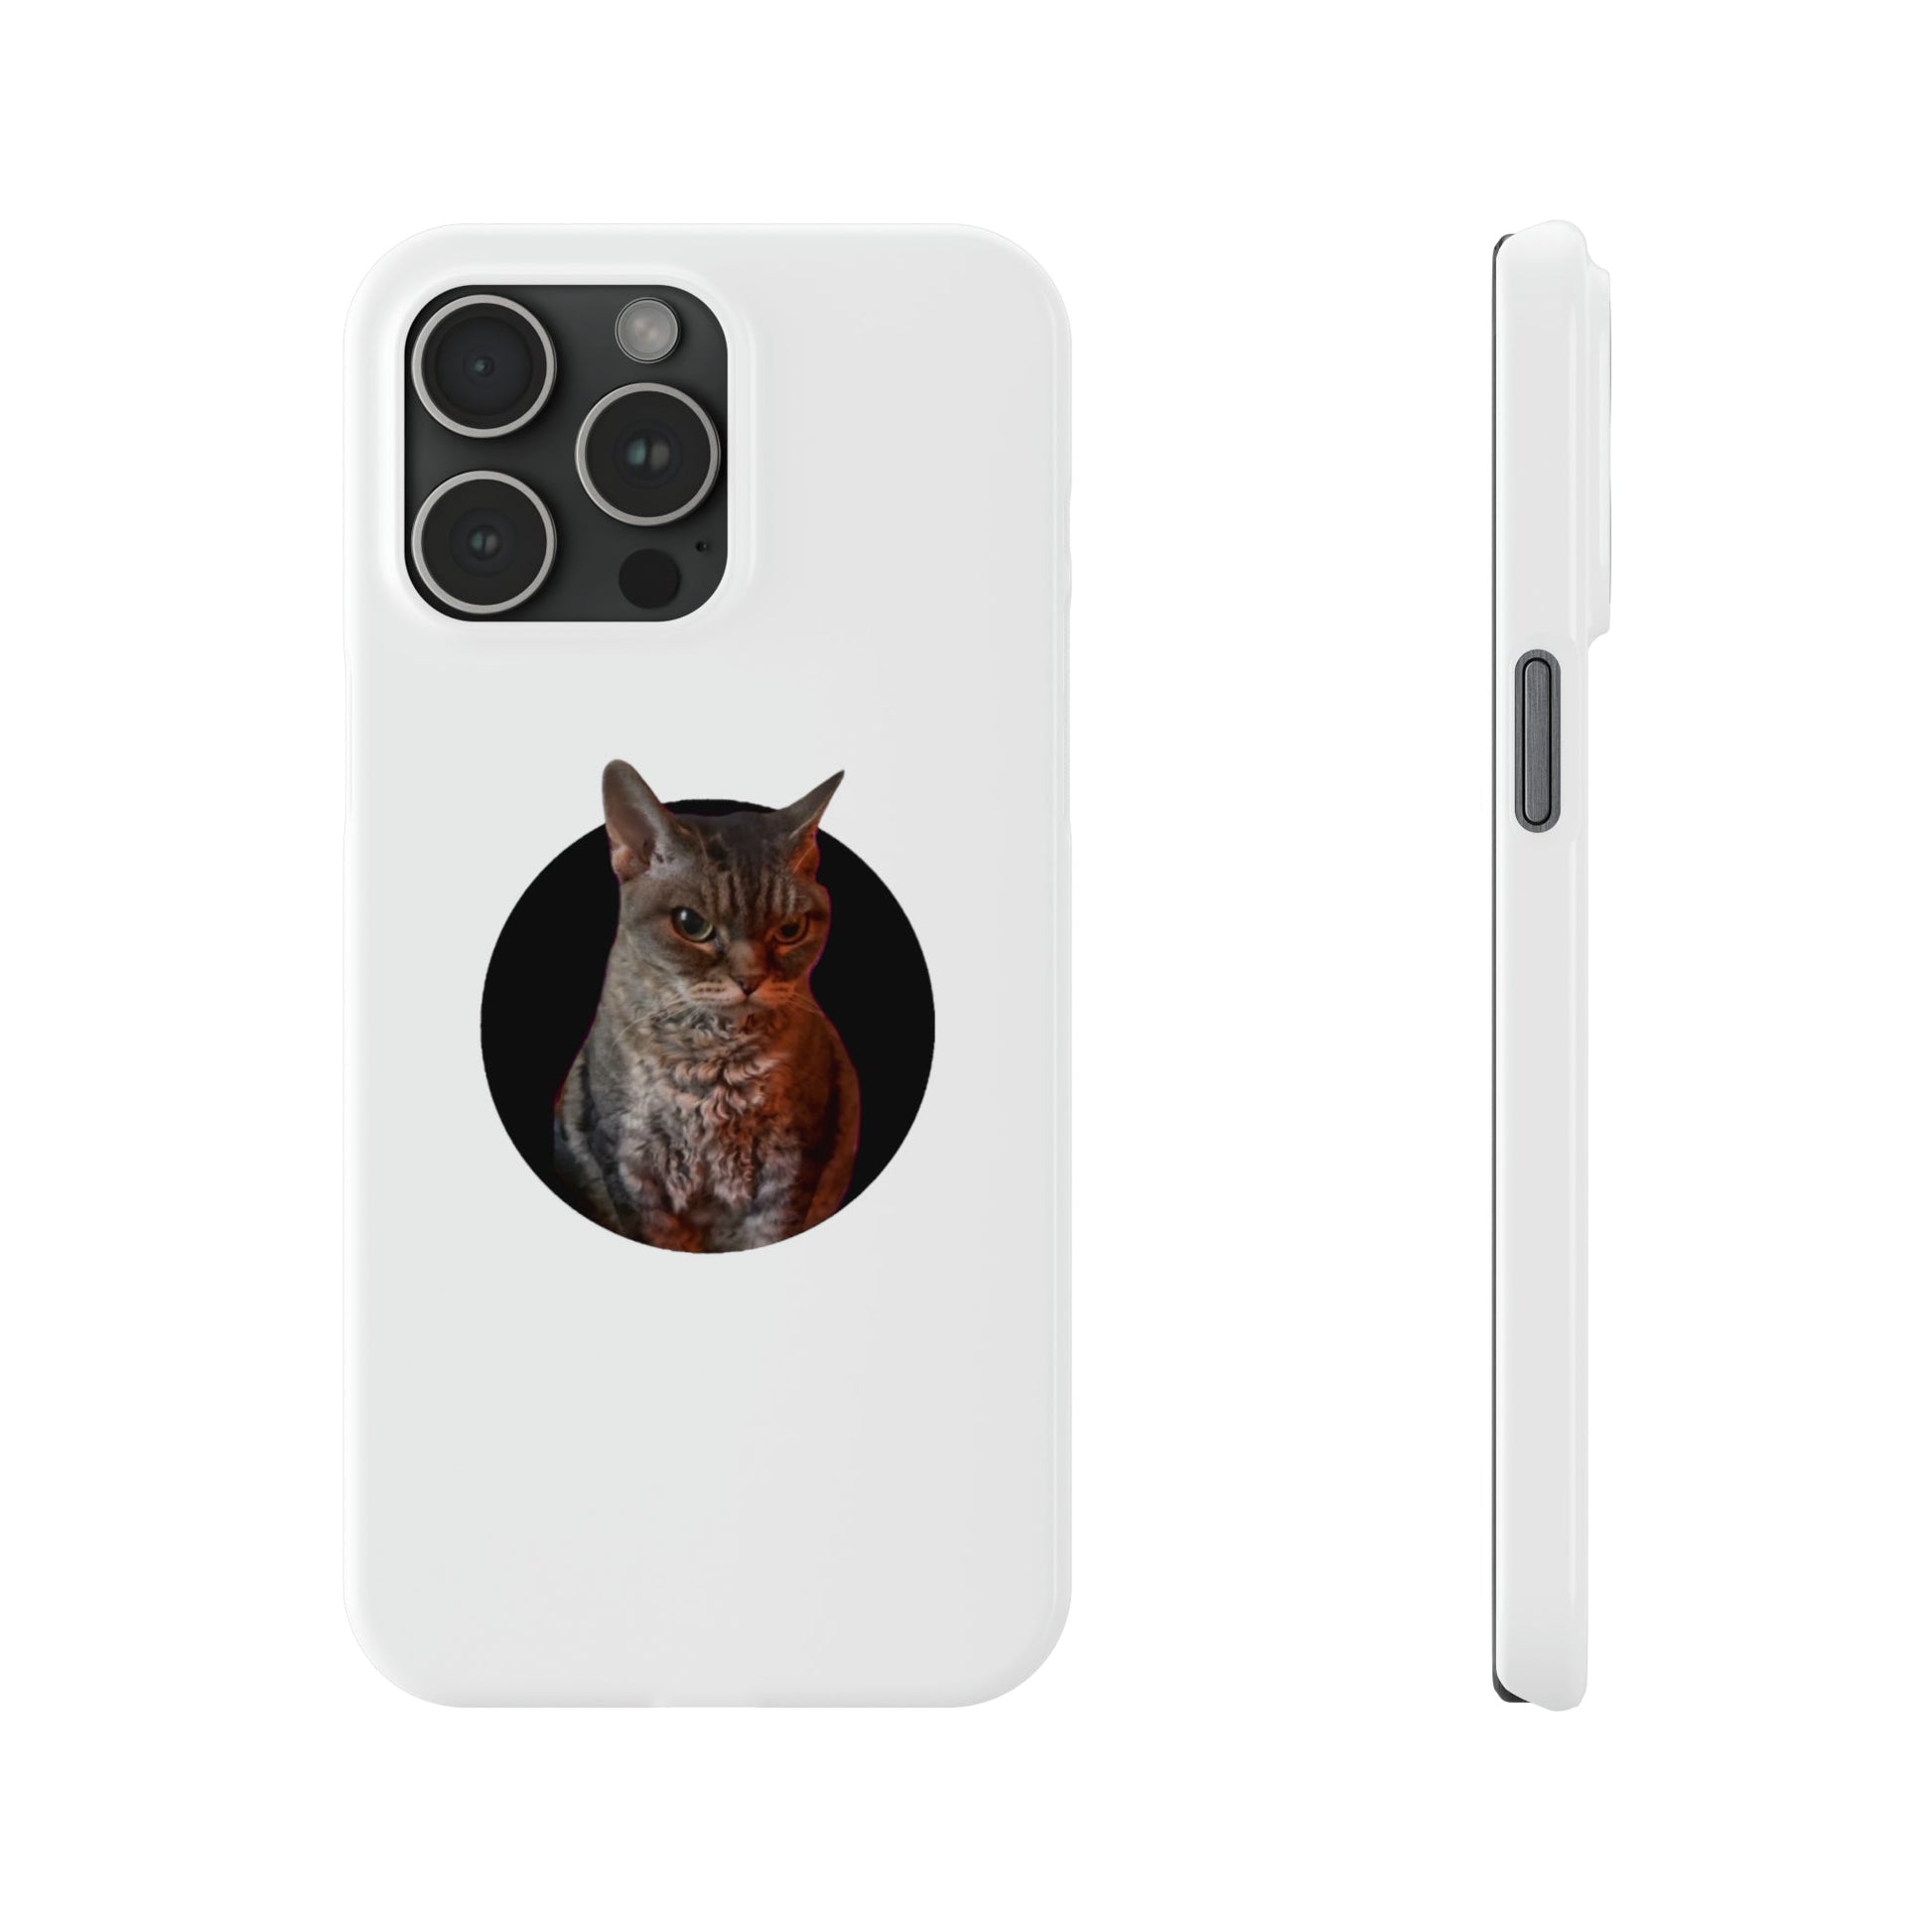 Angry Cat Meme Slim Phone Cases - getallfun